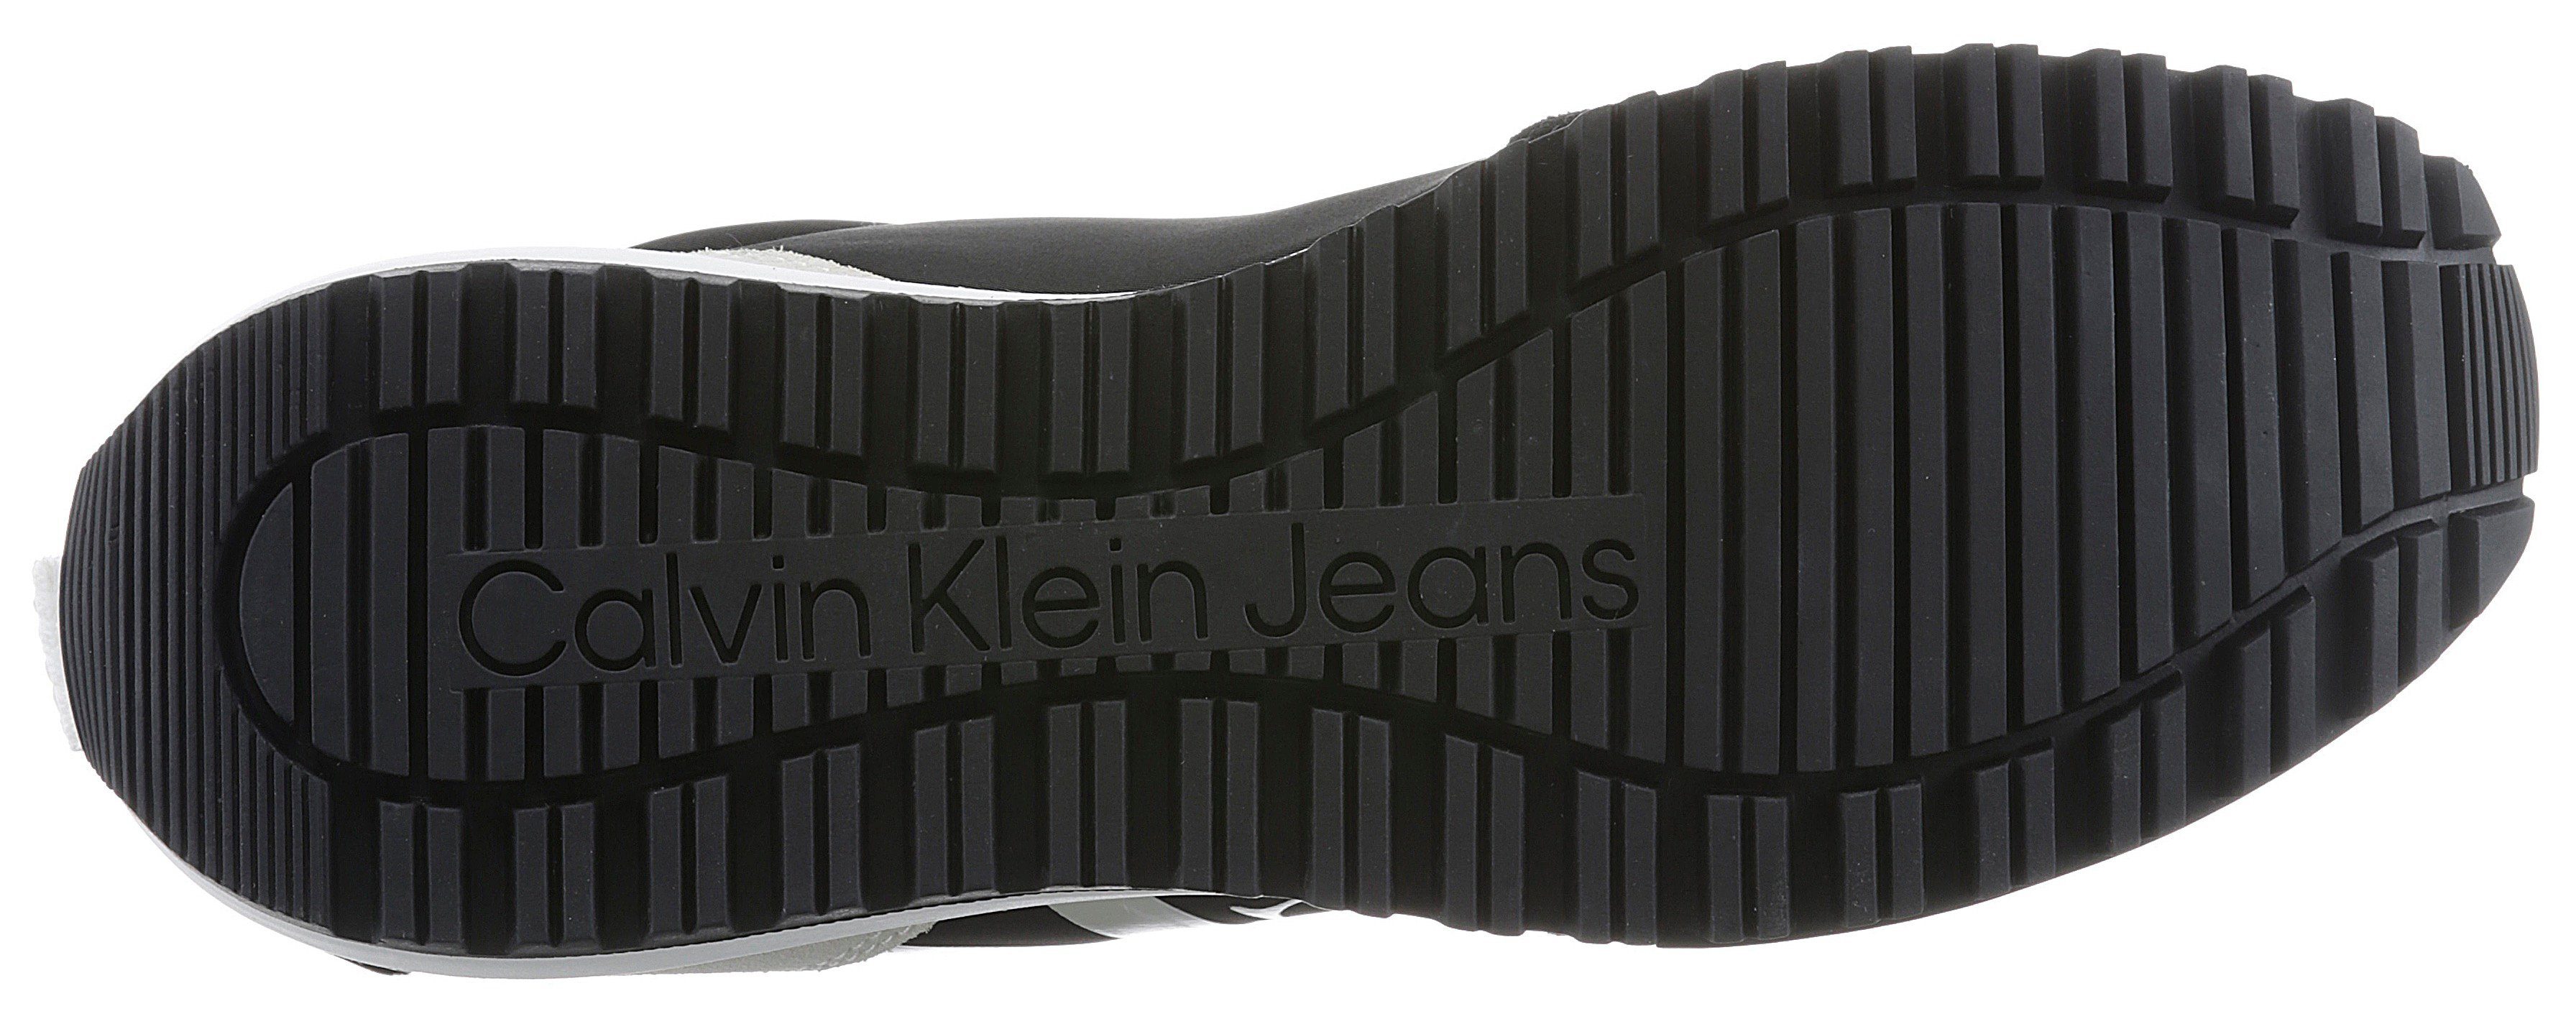 PEARL mit Sneaker Calvin MIX Profilsohle Klein LACEUP Jeans schwarz-weiß TOOTHY RUNNER